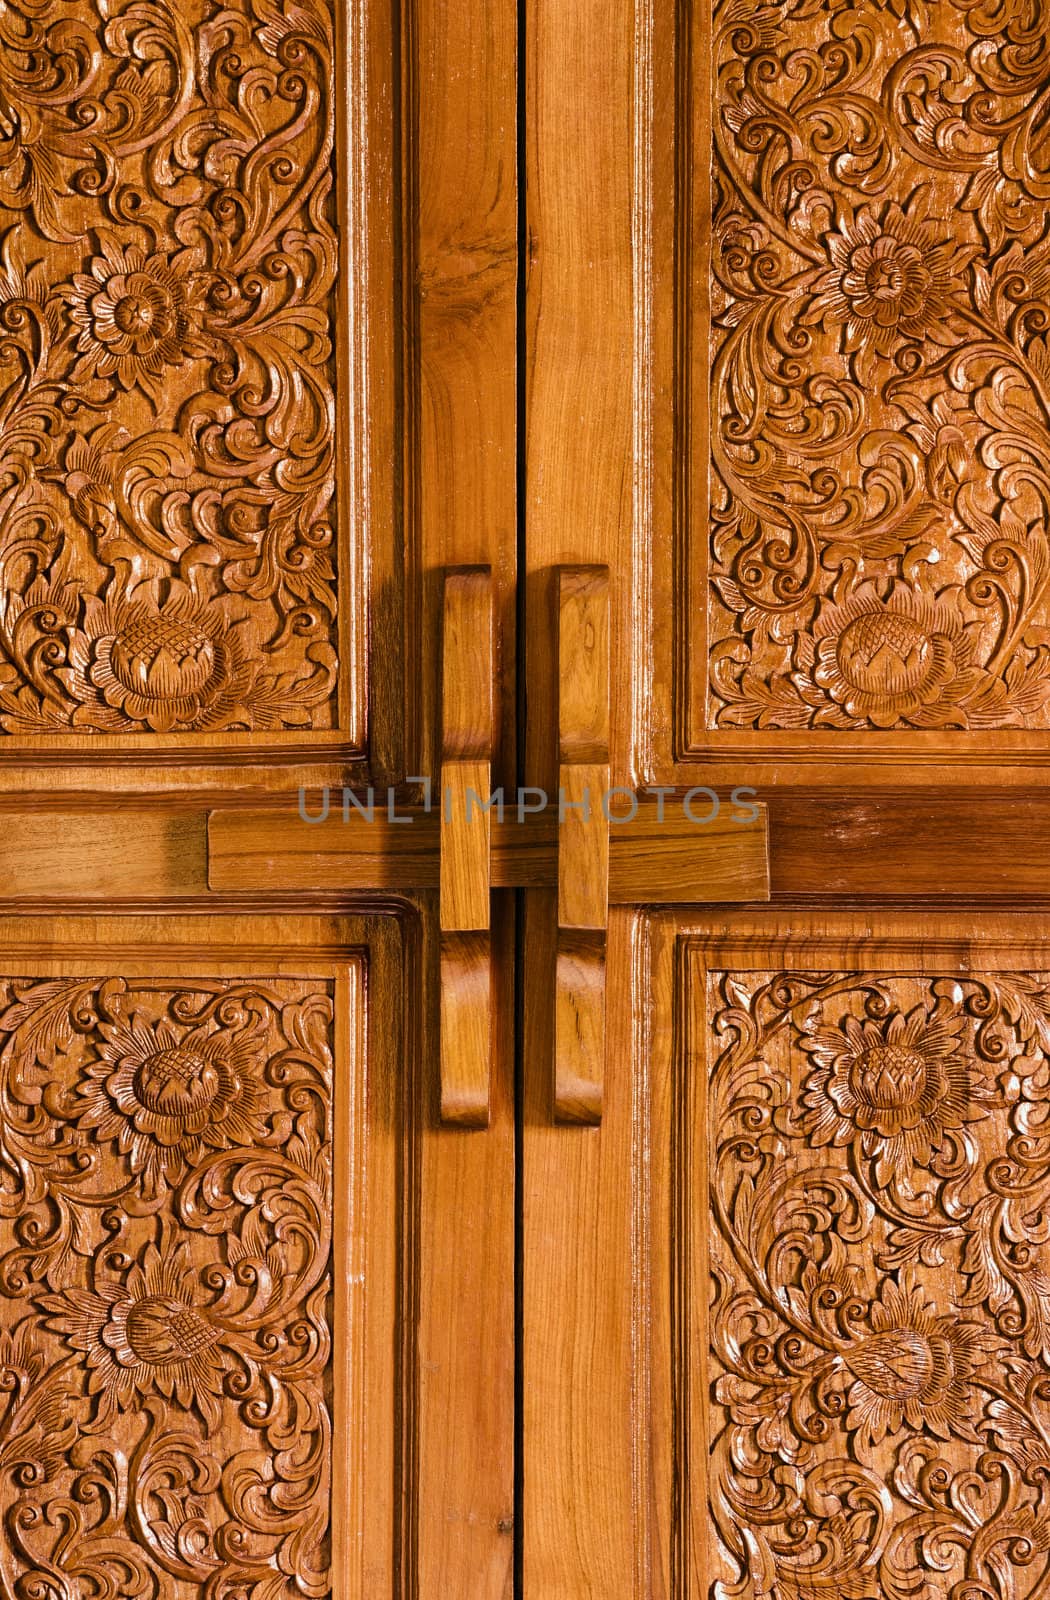 Antique bolt on wooden flowered door  by iryna_rasko